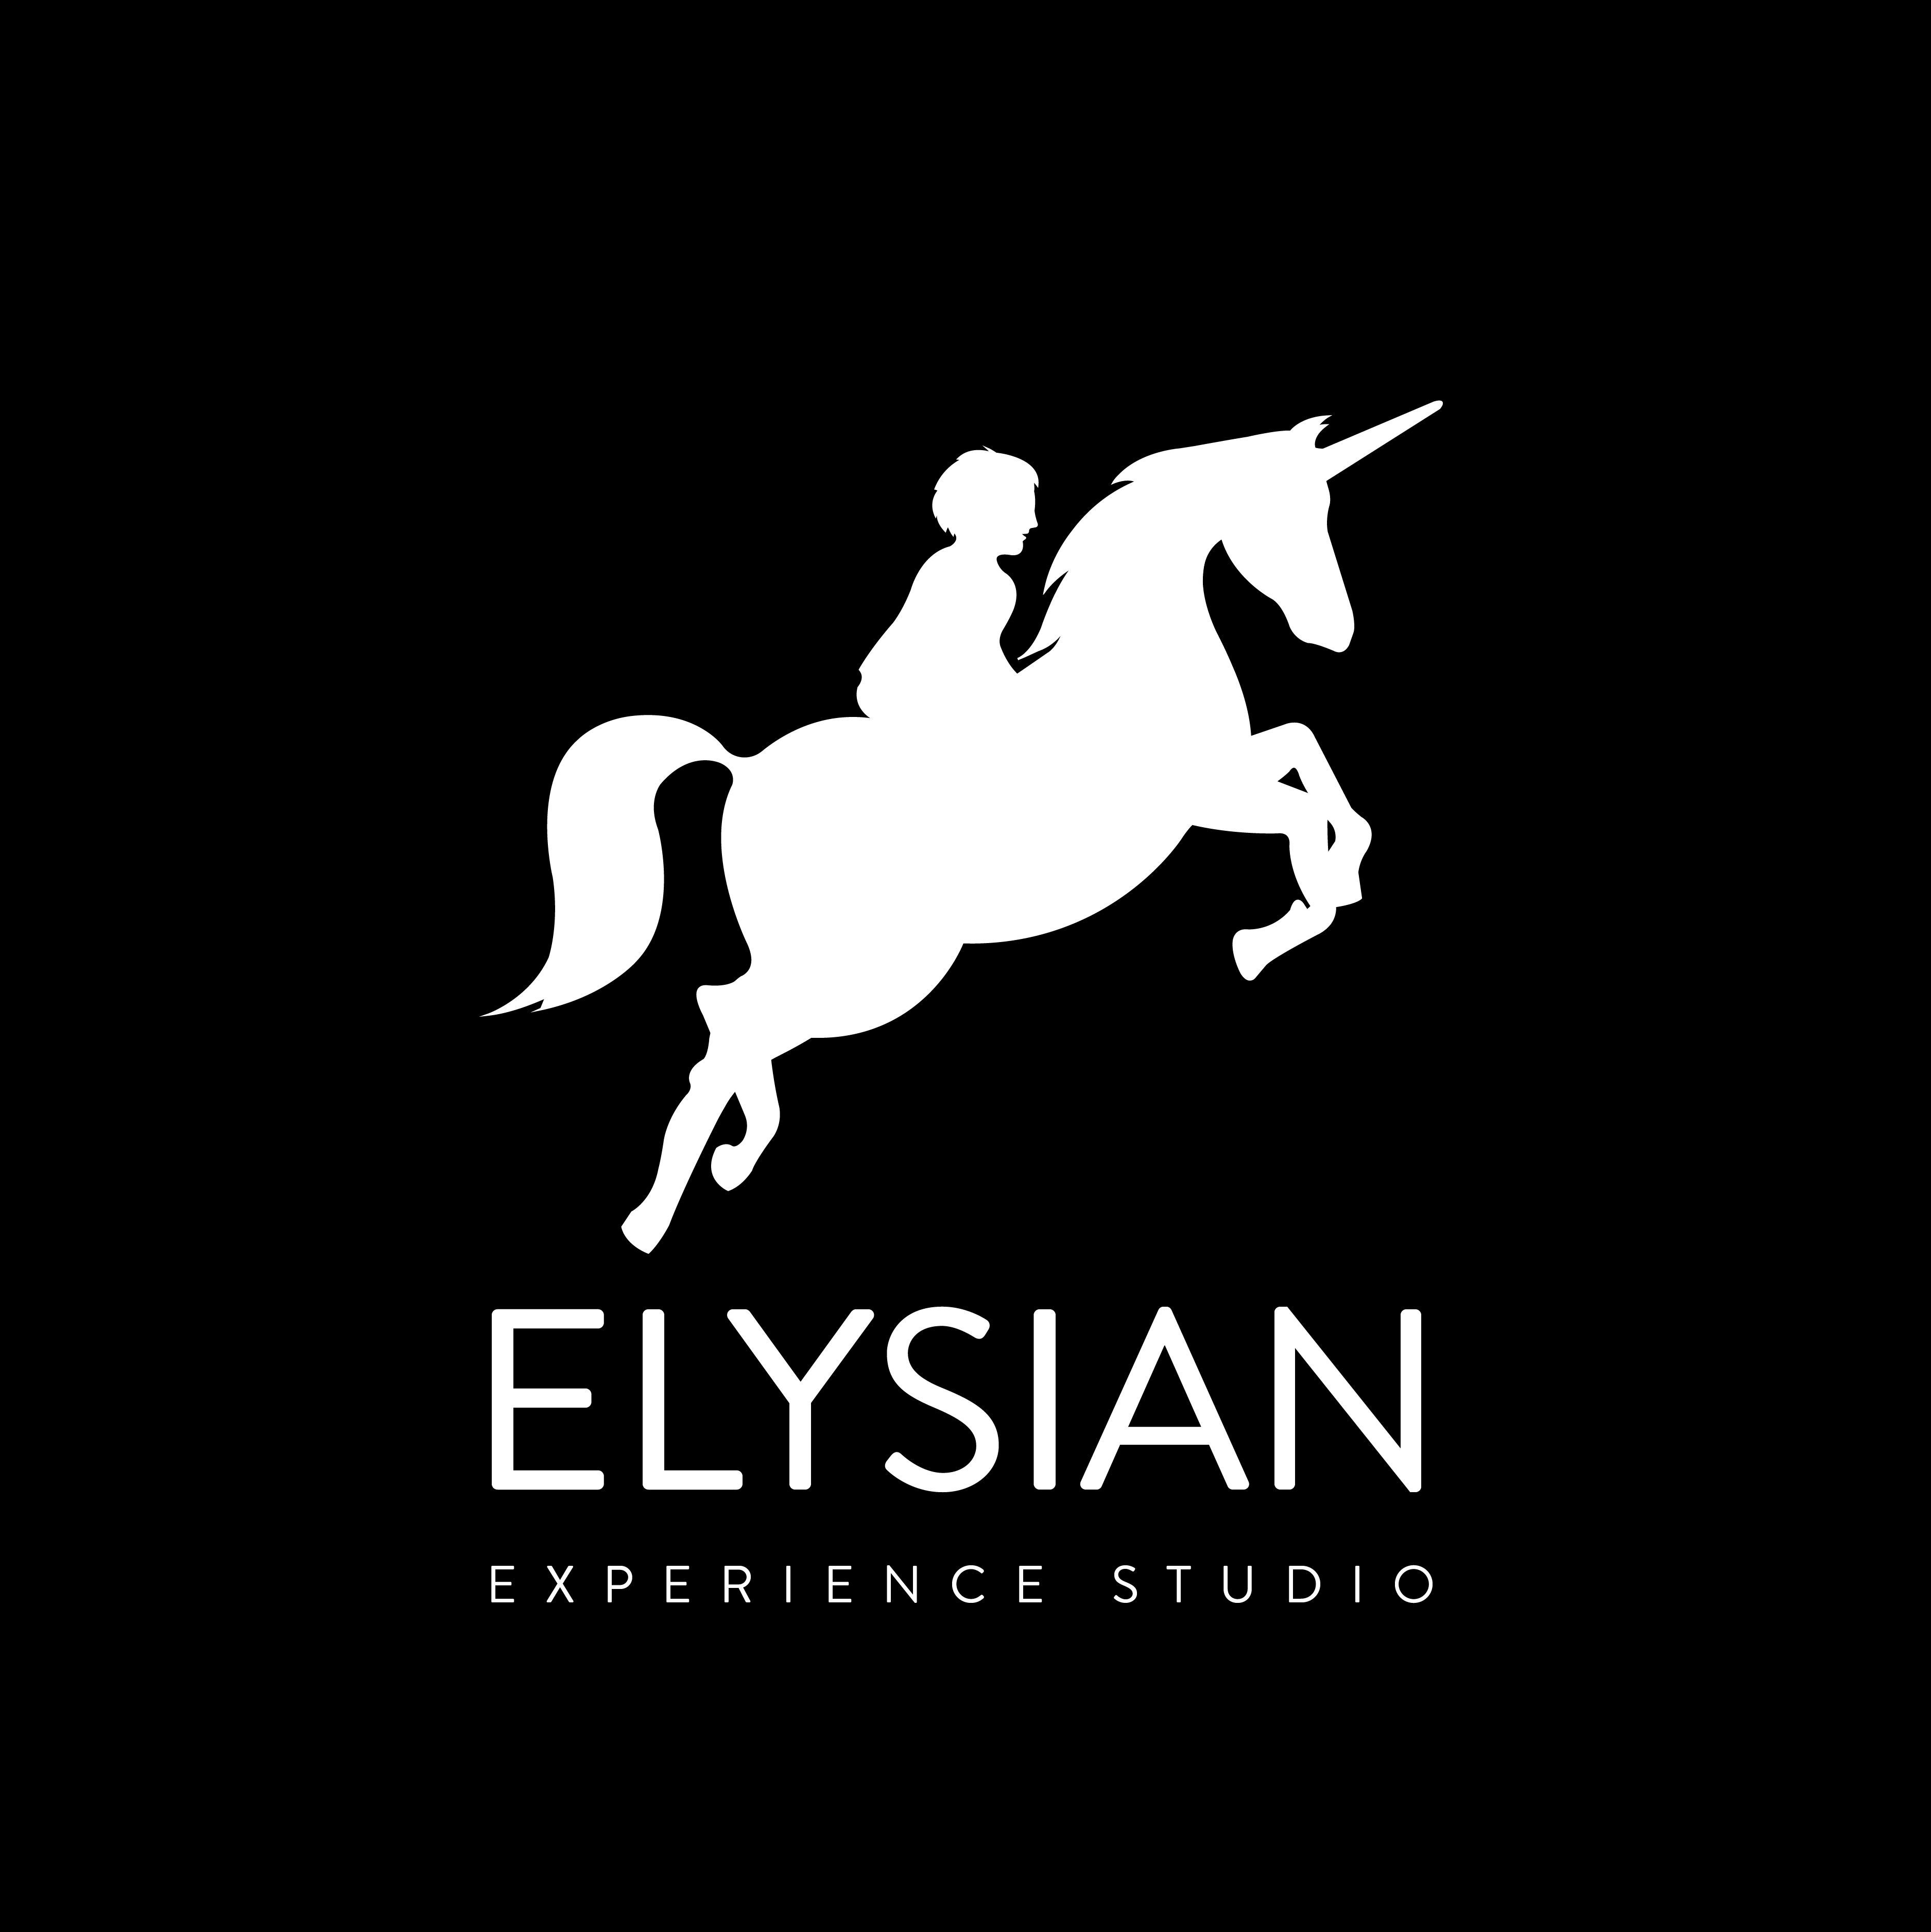 Elysian Studios